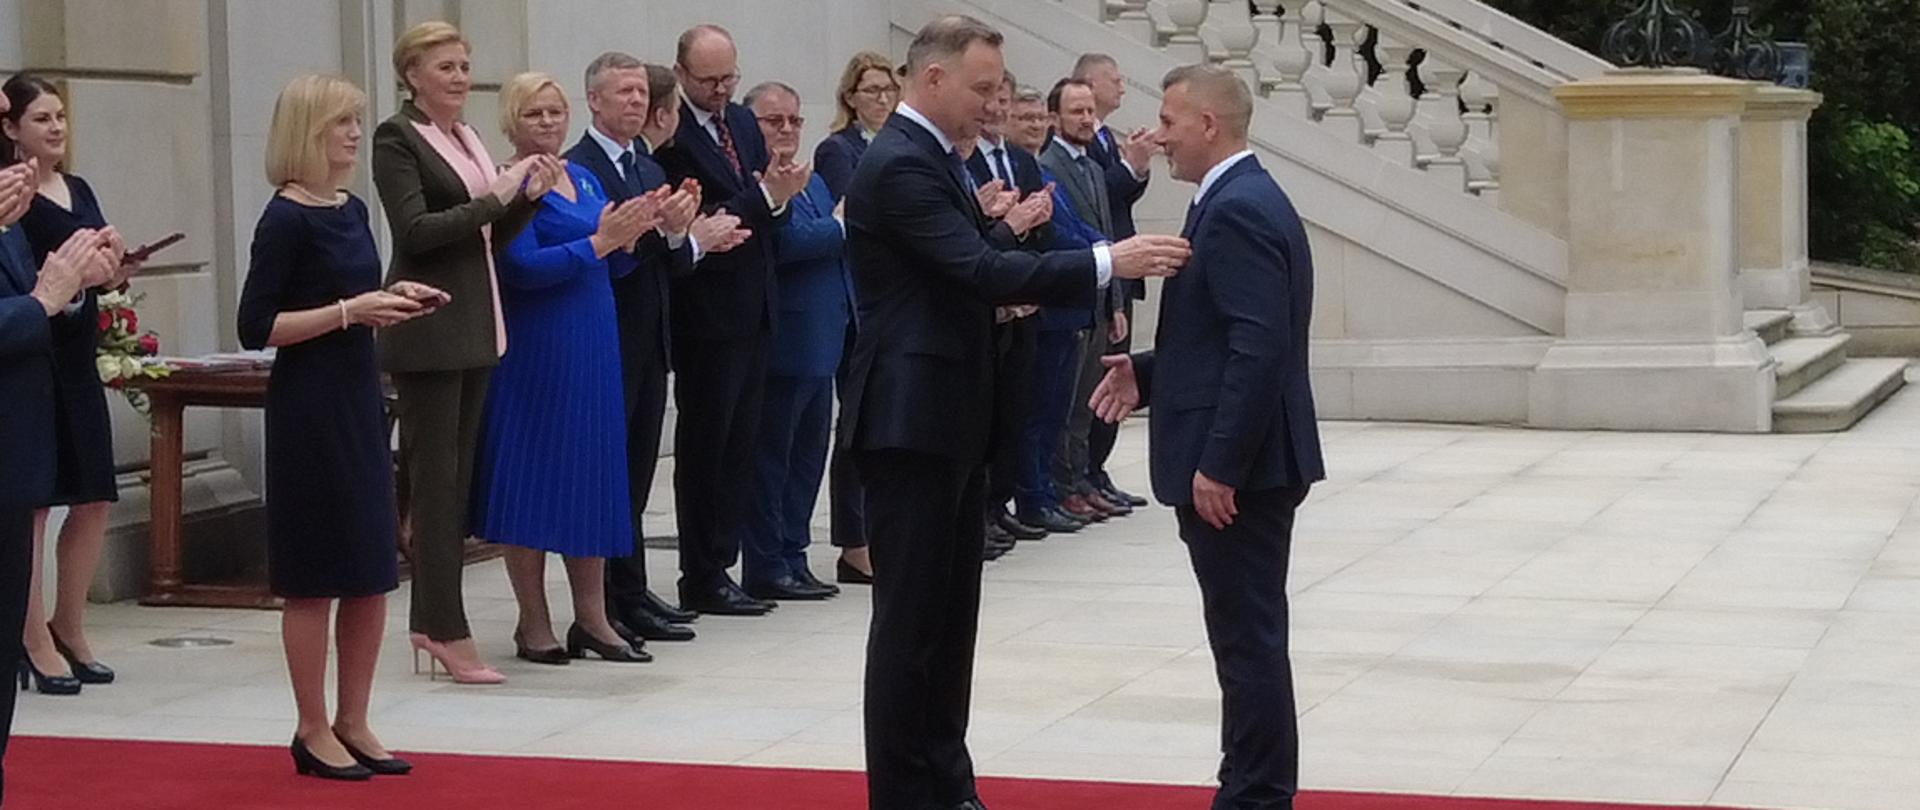 : Starosta Mirosław Walicki odznaczony przez Prezydenta RP Andrzeja Dudę Srebrnym Krzyżem Zasługi.